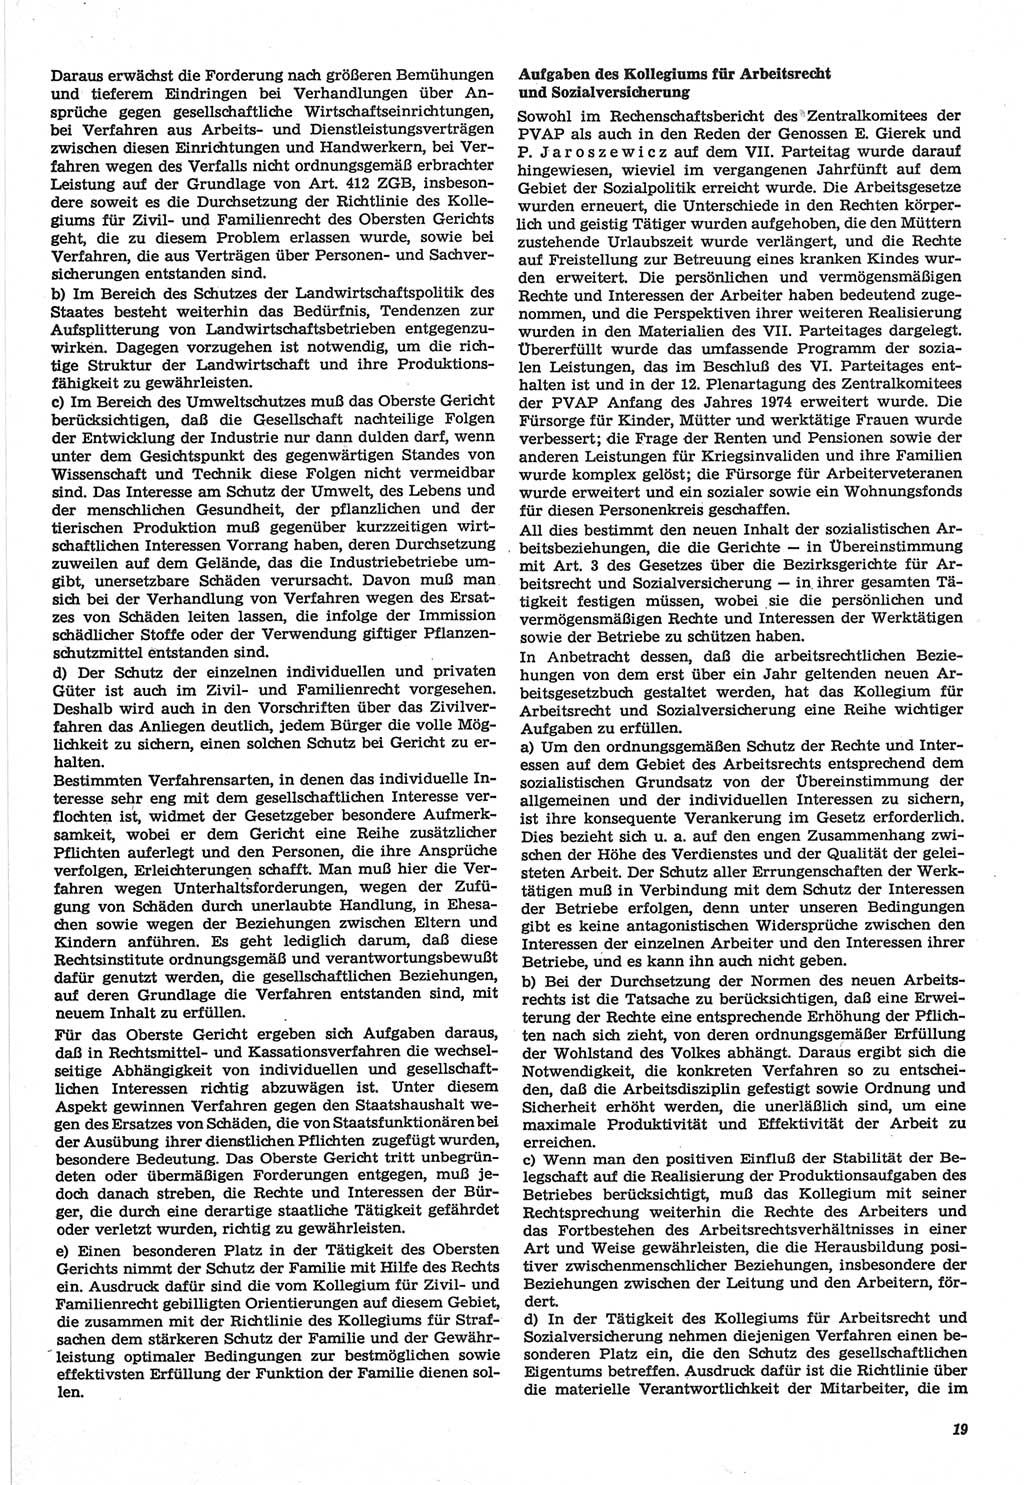 Neue Justiz (NJ), Zeitschrift für Recht und Rechtswissenschaft-Zeitschrift, sozialistisches Recht und Gesetzlichkeit, 31. Jahrgang 1977, Seite 19 (NJ DDR 1977, S. 19)